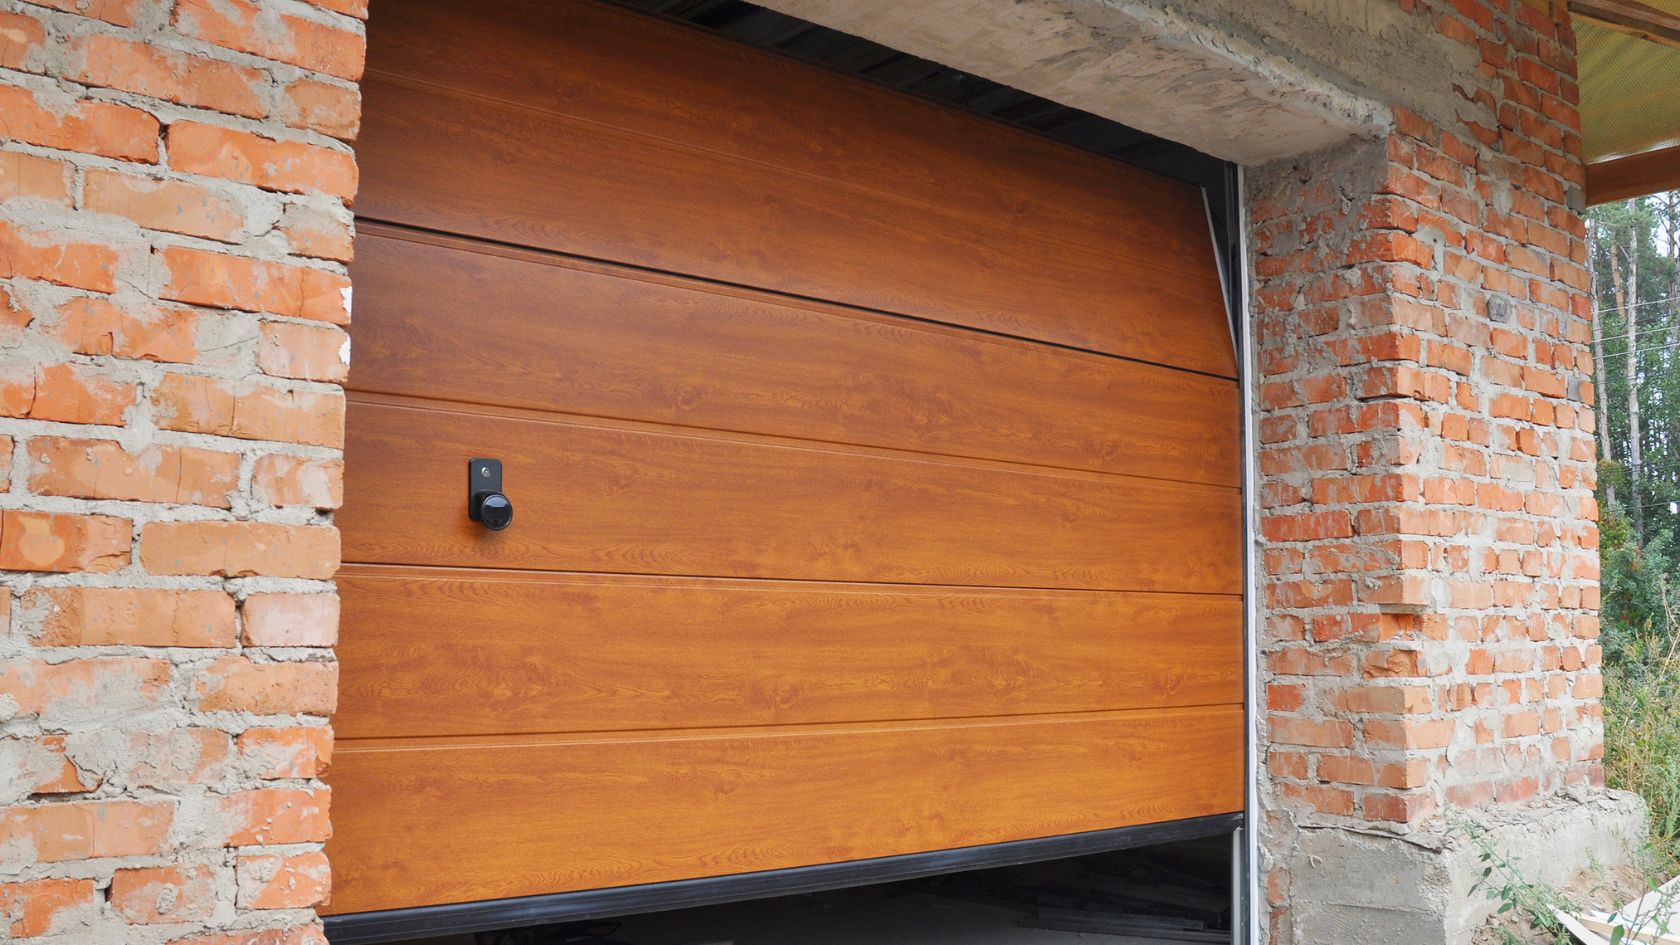 A brown garage door is open on a brick building